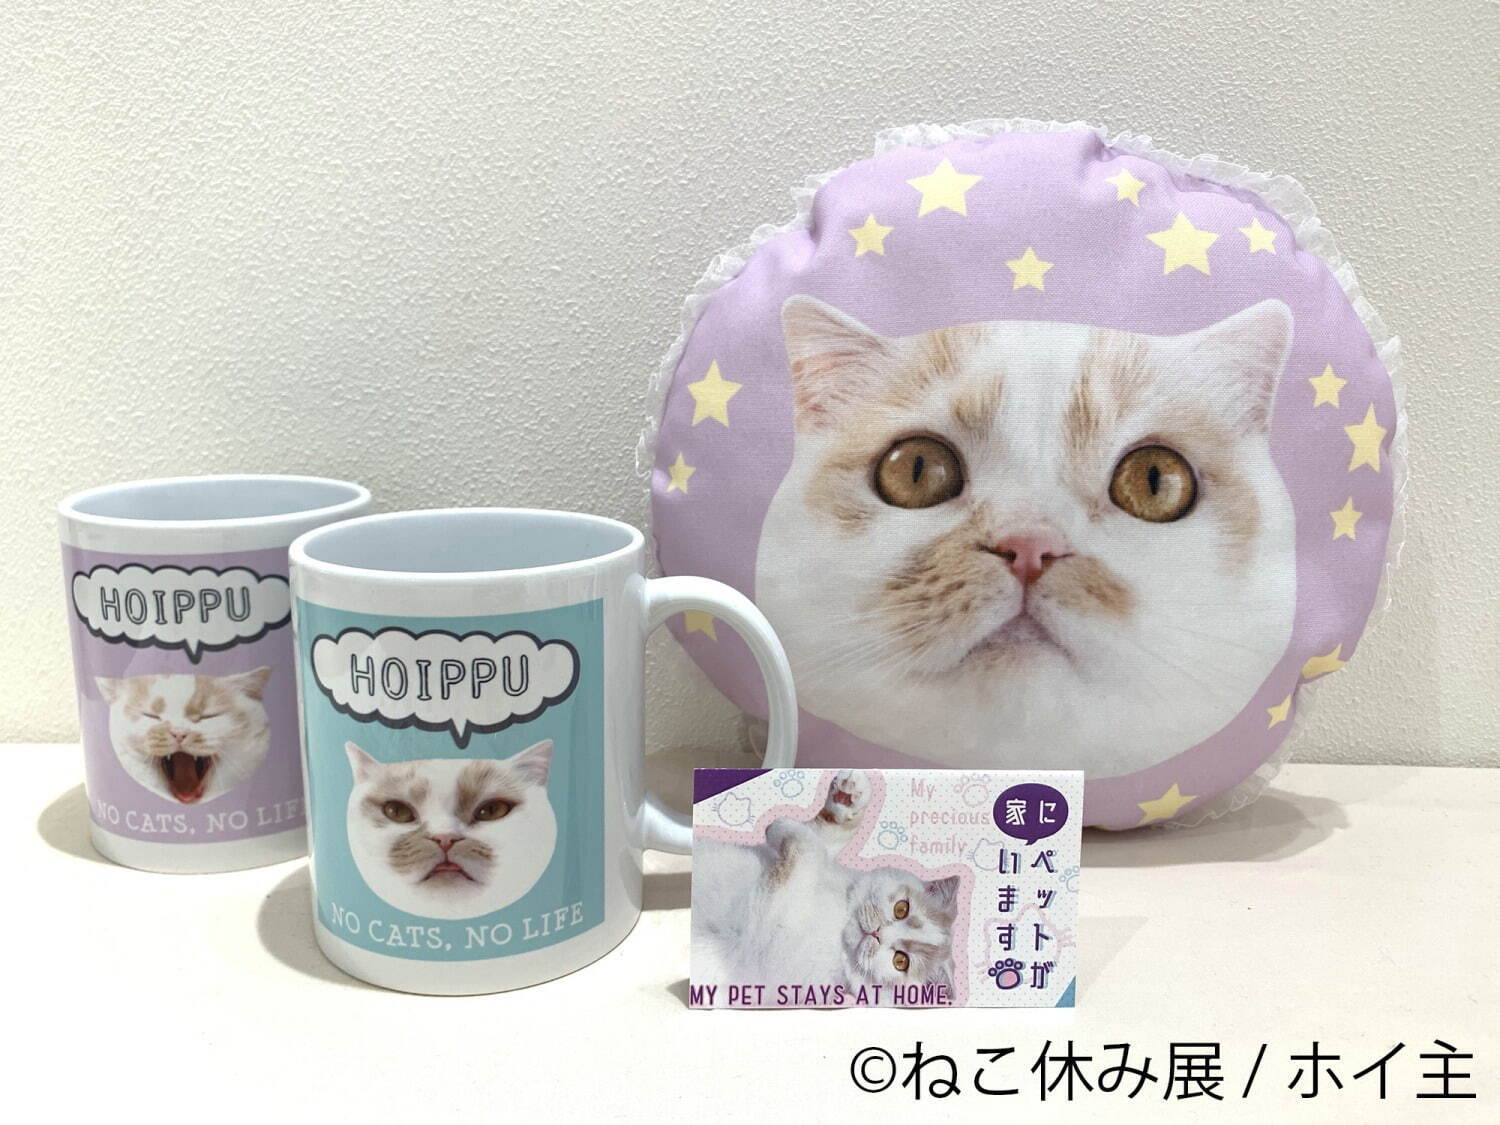 【ホイ主】マグカップ 各1,650円、猫⽤ミニクッション 2,750円